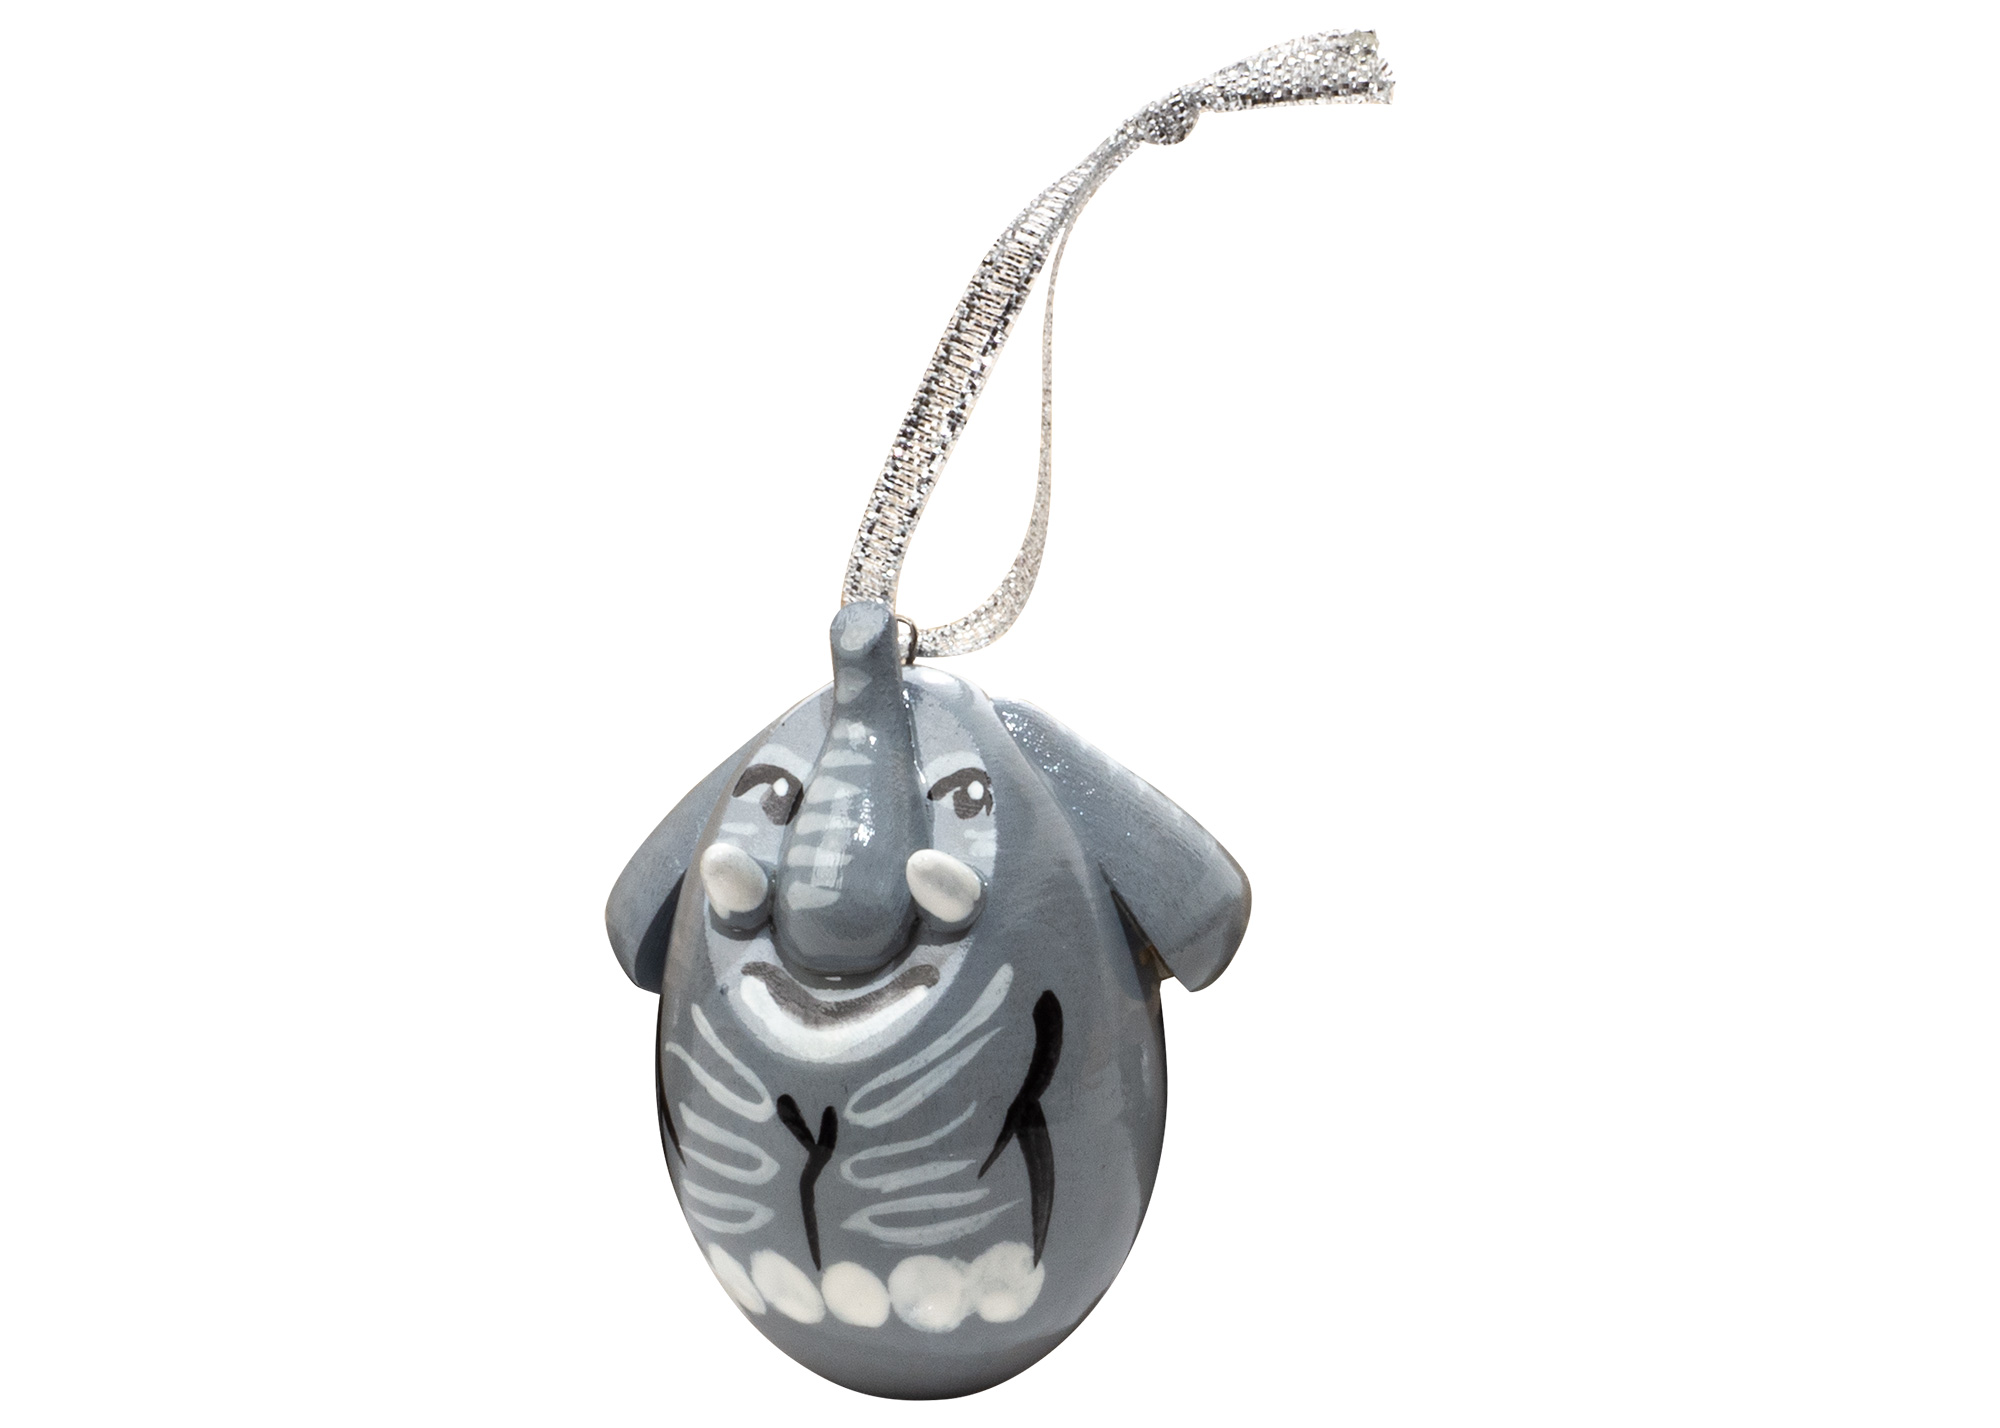 Buy Елочное украшение "Слон" 5 см at GoldenCockerel.com